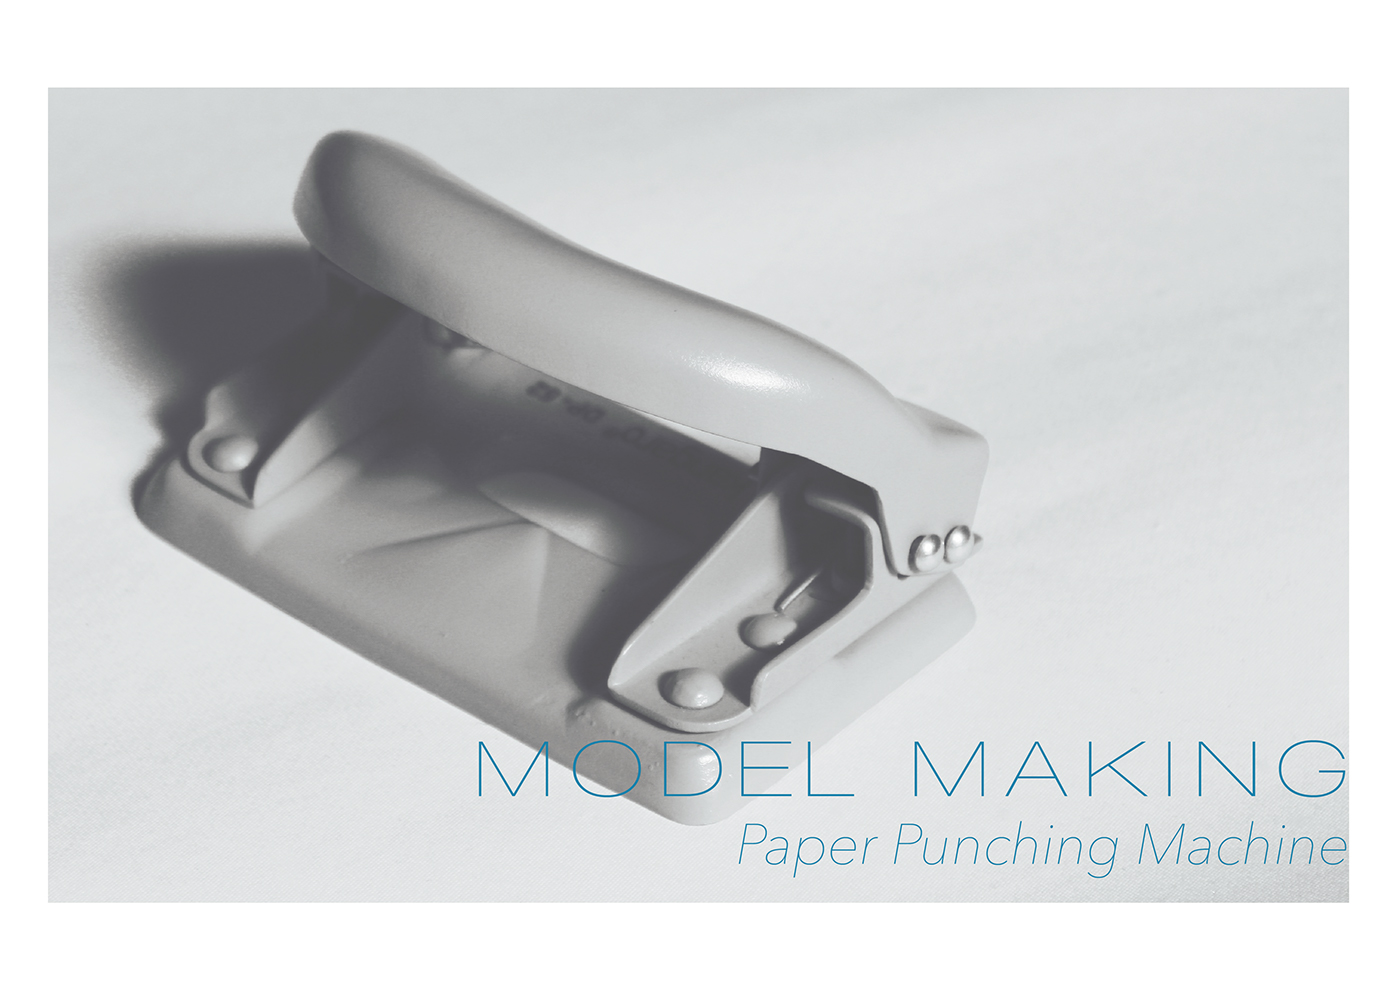 Model Making Paper Punching Machine